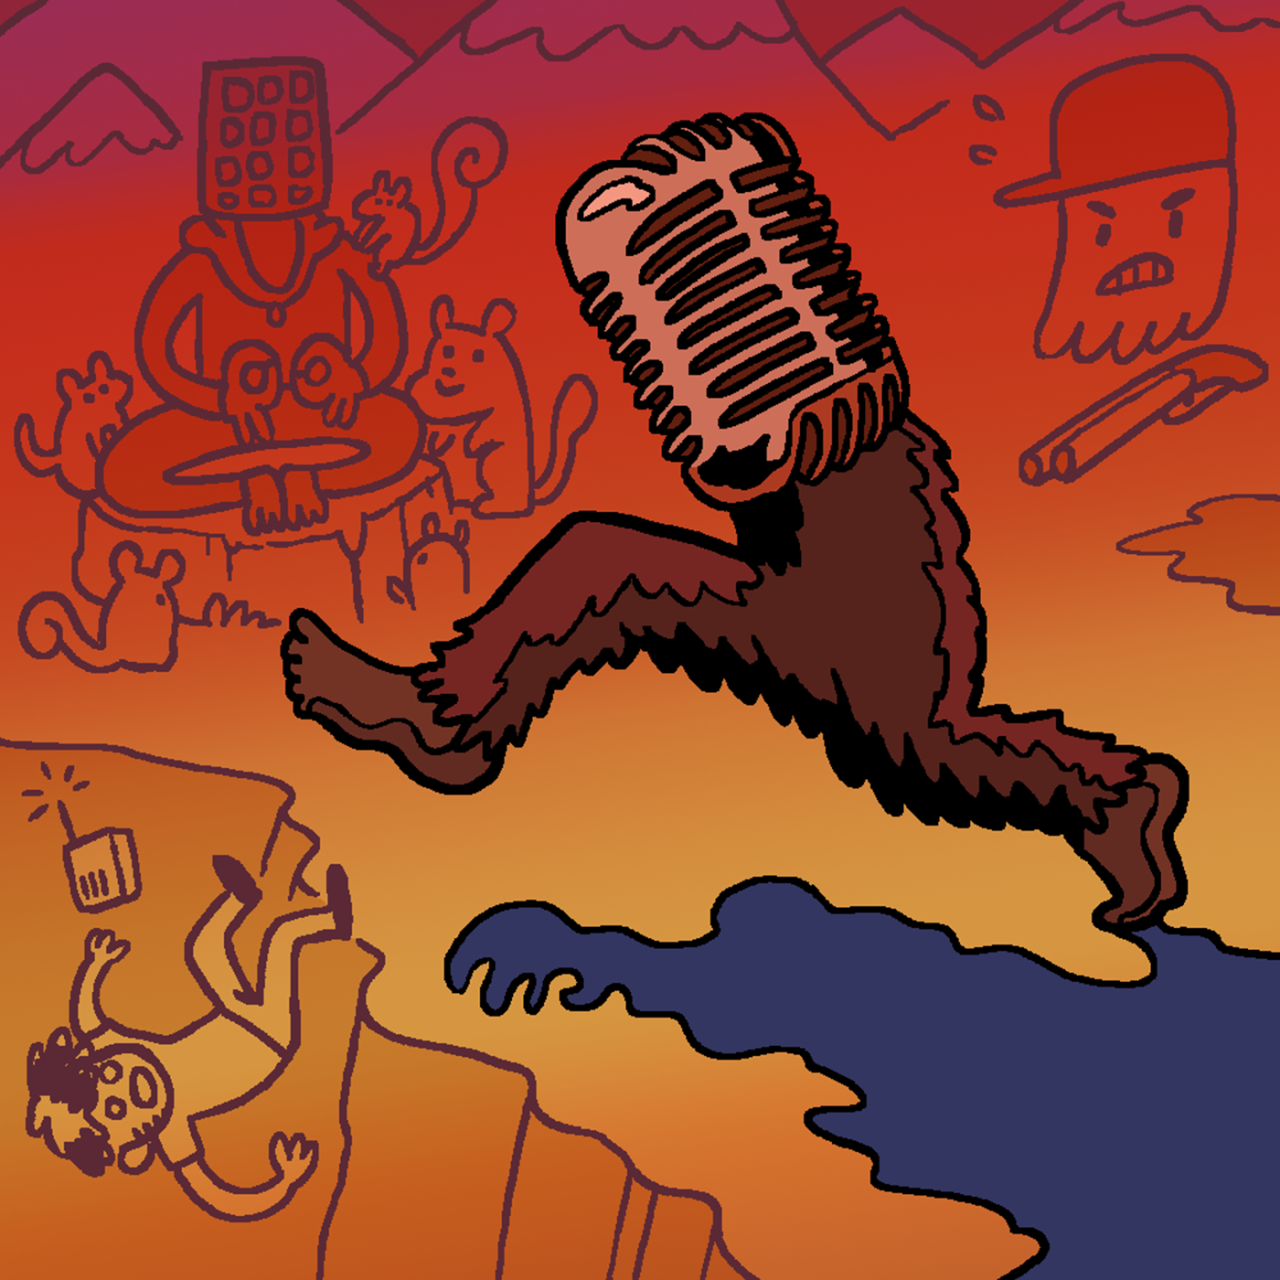 Eine selbst gezeichnete Version des Original-Covers von Folge 16 "Das Bergmonster". Ein haariges Monster mit braunem Fell stößt Jeff von einer Klippe. Tim will es mit einer Schrotflinte aufhalten, während Marcus mit Eichhörnchen meditiert.